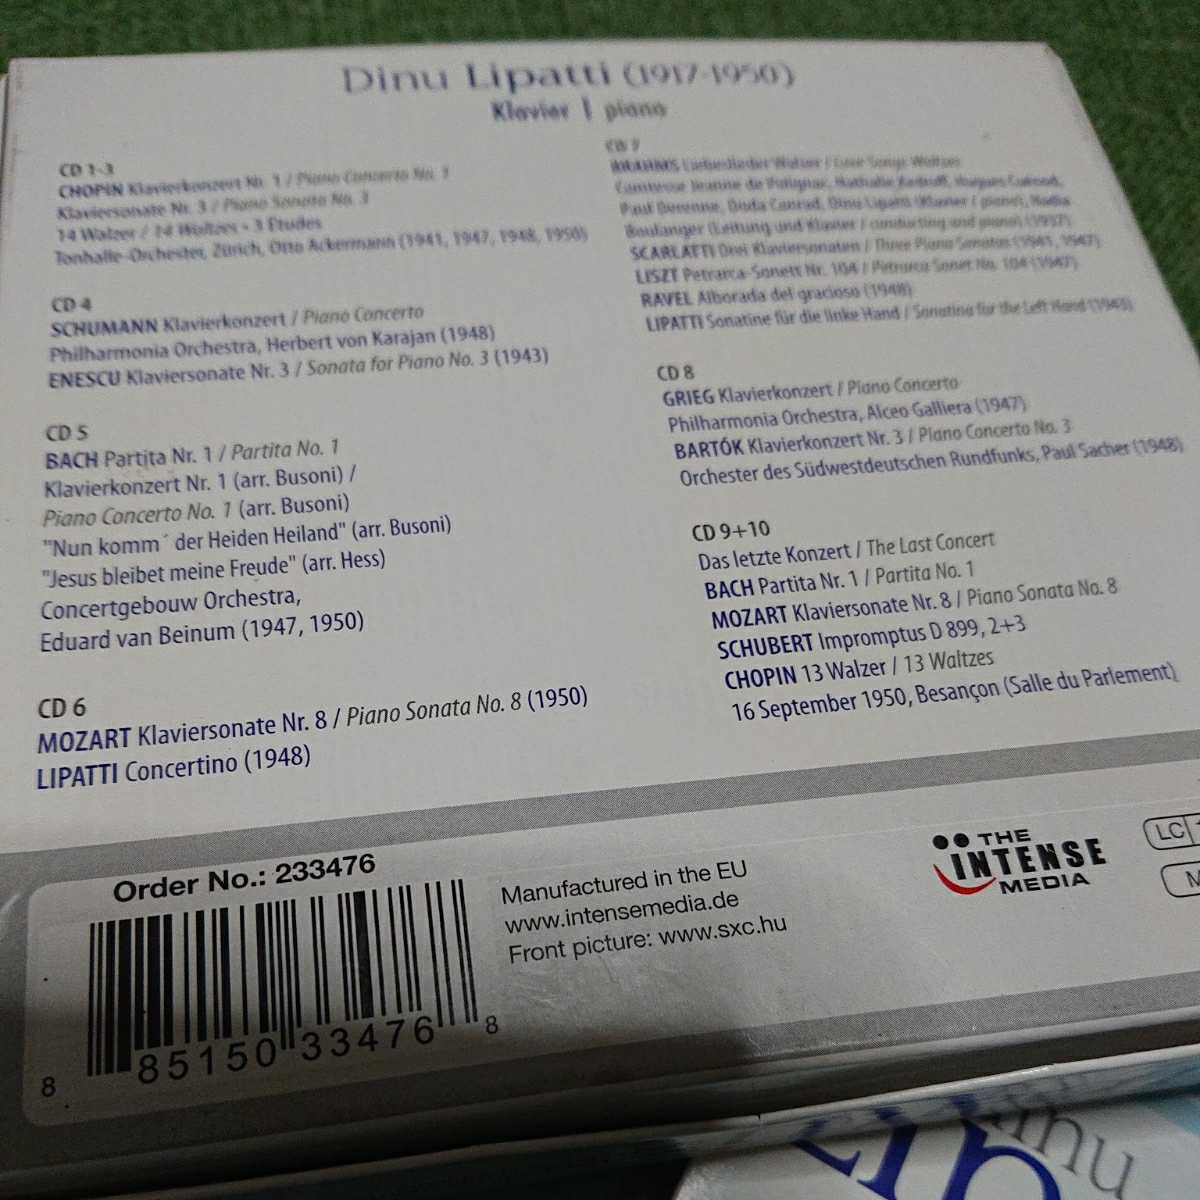 【廃盤】リパッティ名演集(10CD) Membran Walletの神ボックス885150334768 233476の画像2